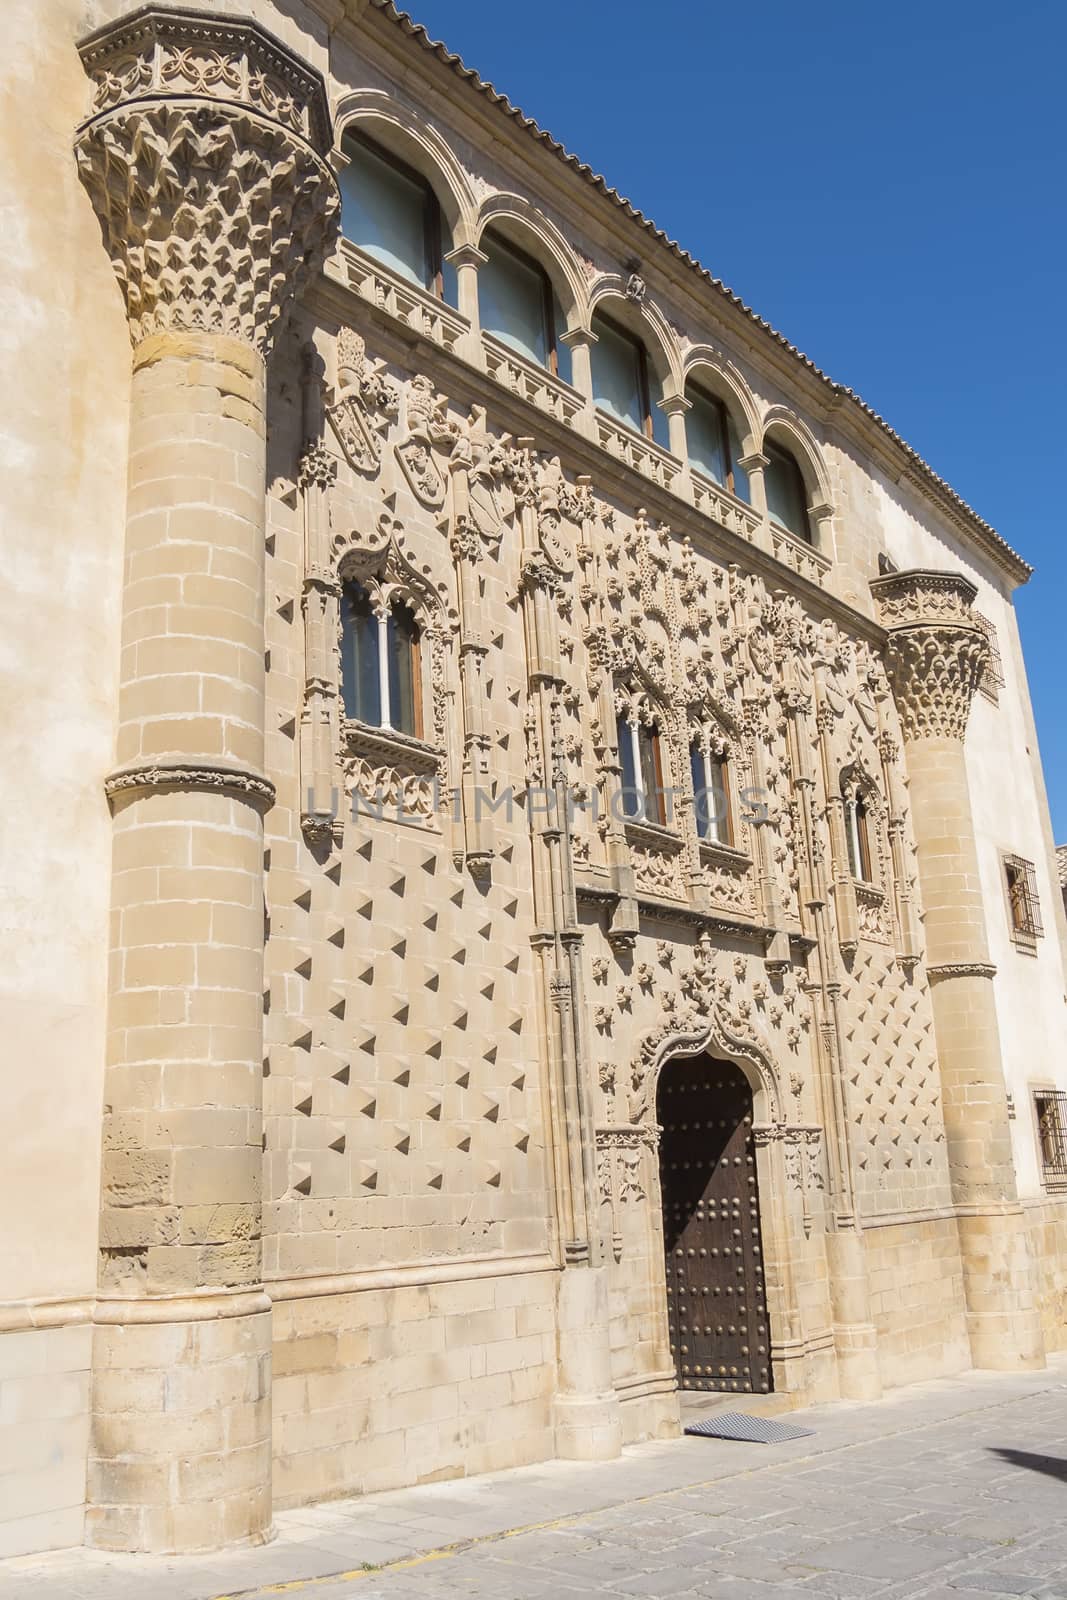 Jabalquinto Palace main facade, Baeza, Spain by max8xam